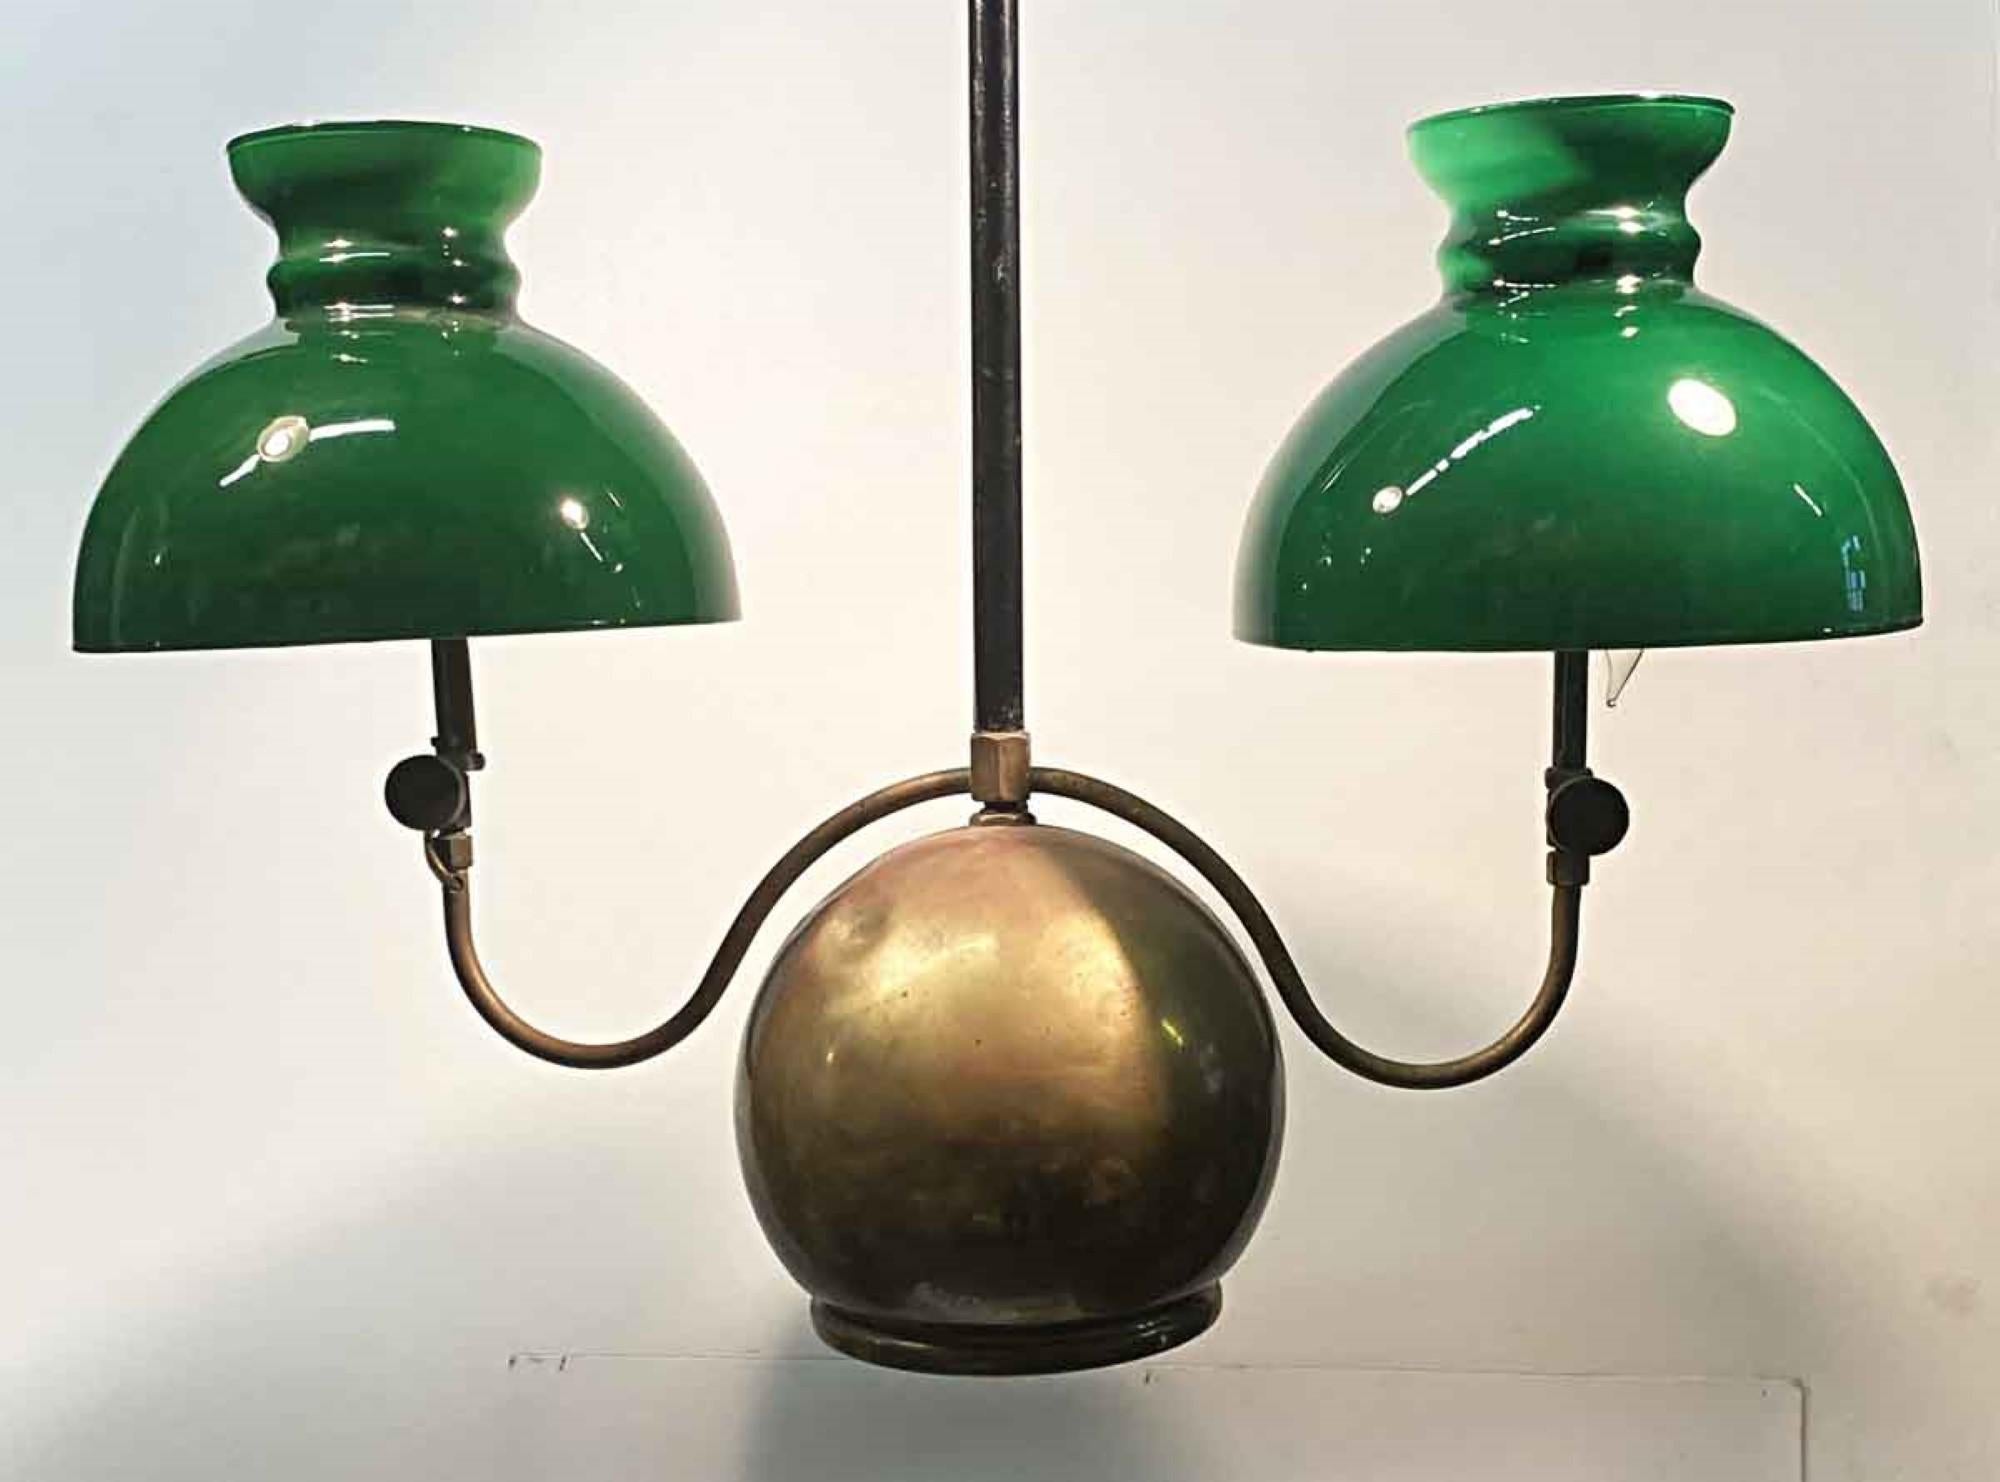 Doppelflammige Öllaterne aus Messing und grünem Glas mit Walmotiv, 1880er Jahre (amerikanisch)